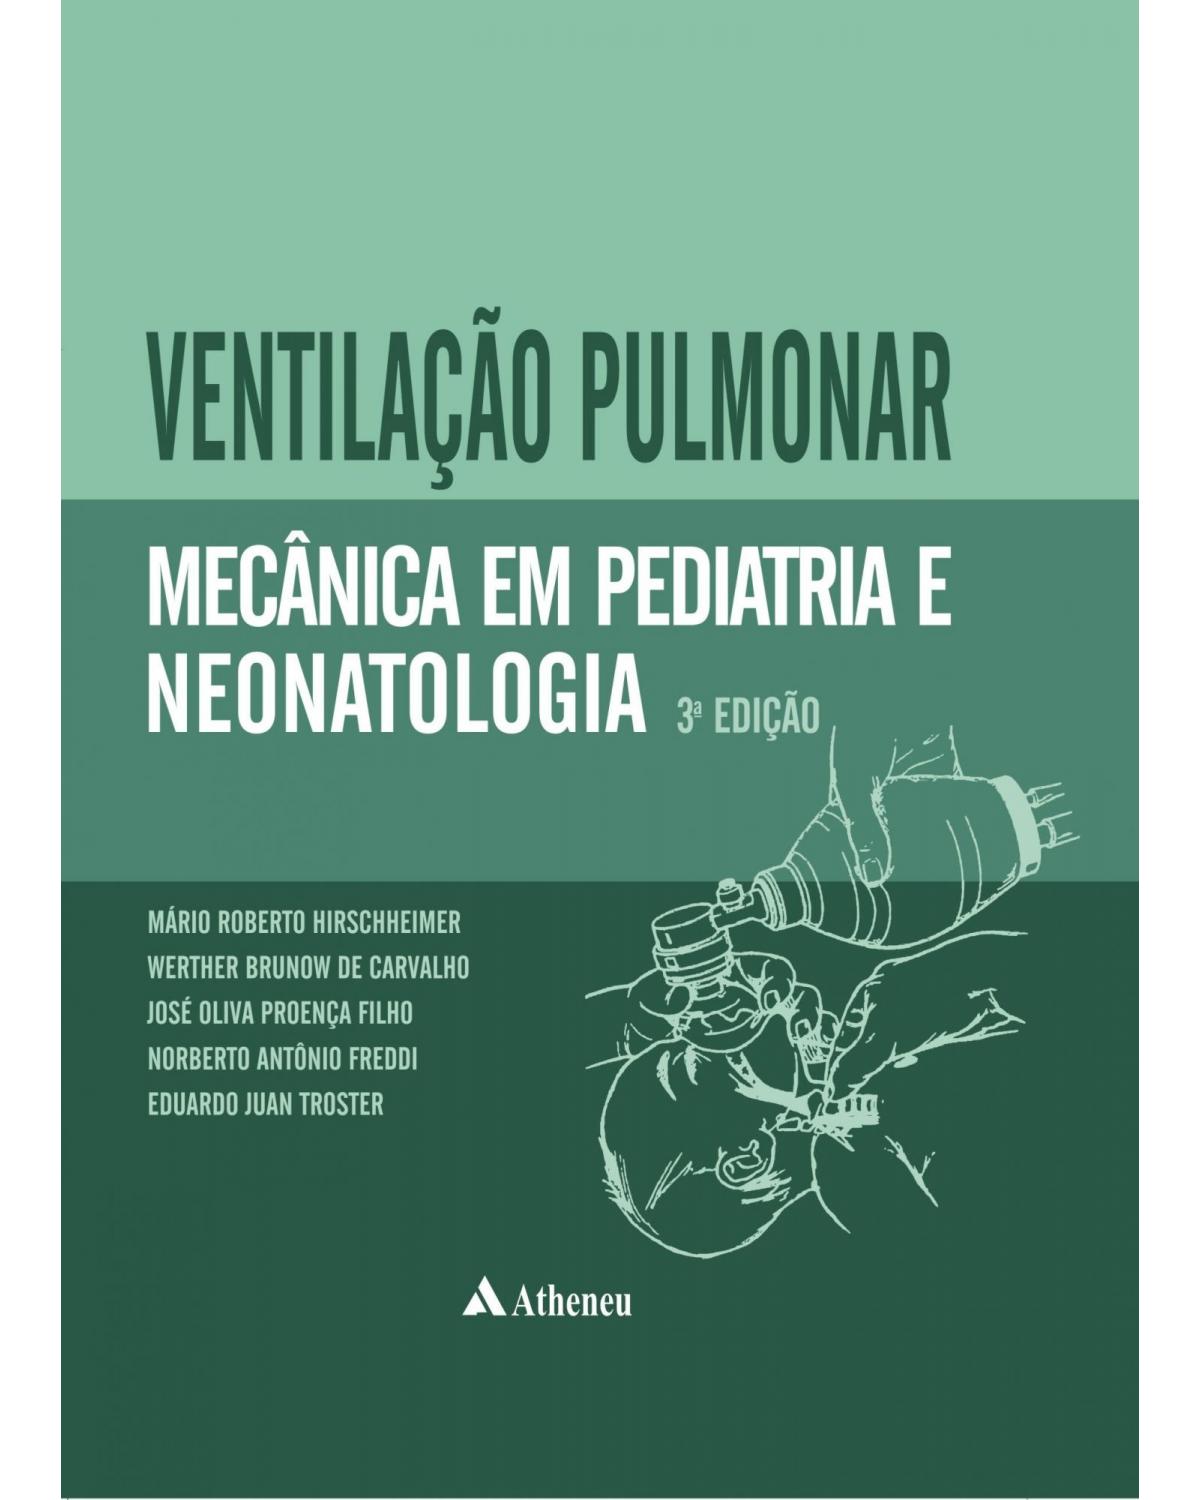 Ventilação pulmonar mecânica em pediatria e neonatologia - 3ª Edição | 2013